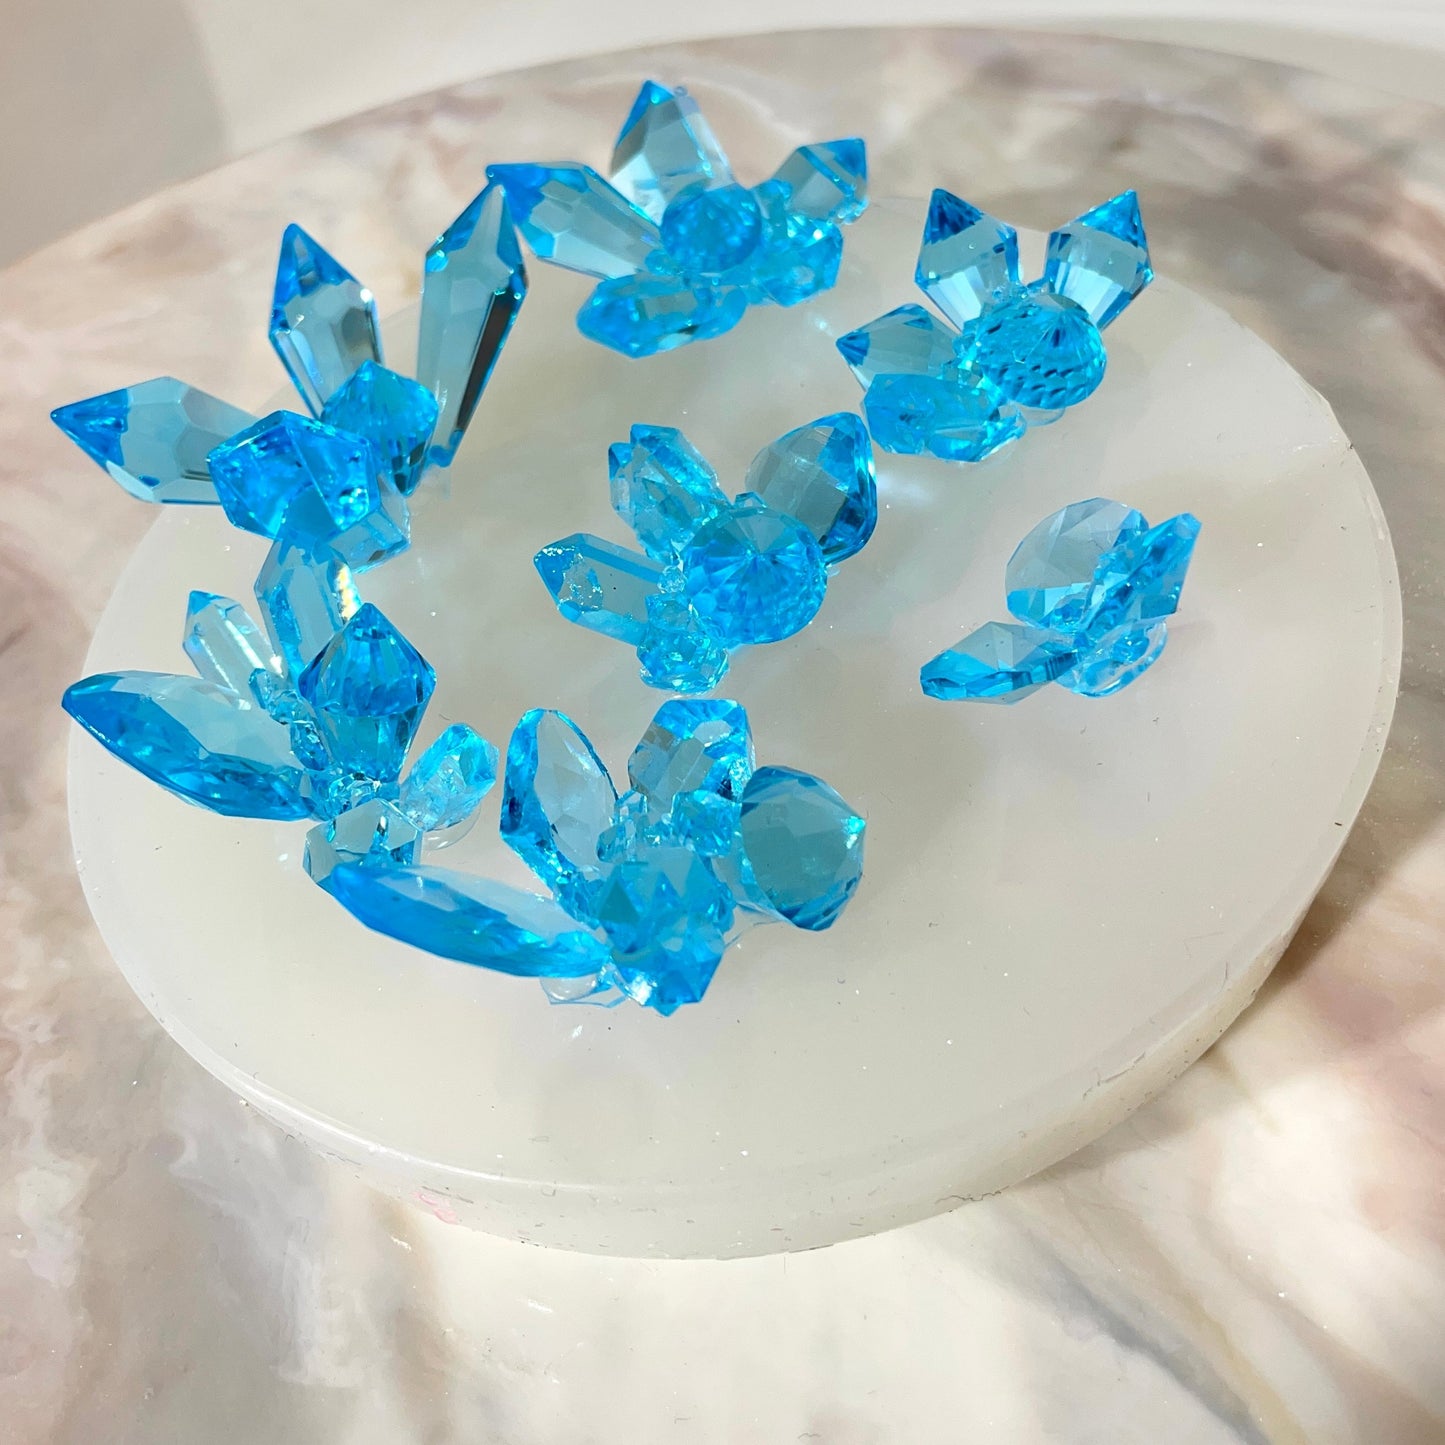 Exquisite Eleganz, die ultimative luxuriöse 7-teilige Silikonform mit funkelnden Kristallen